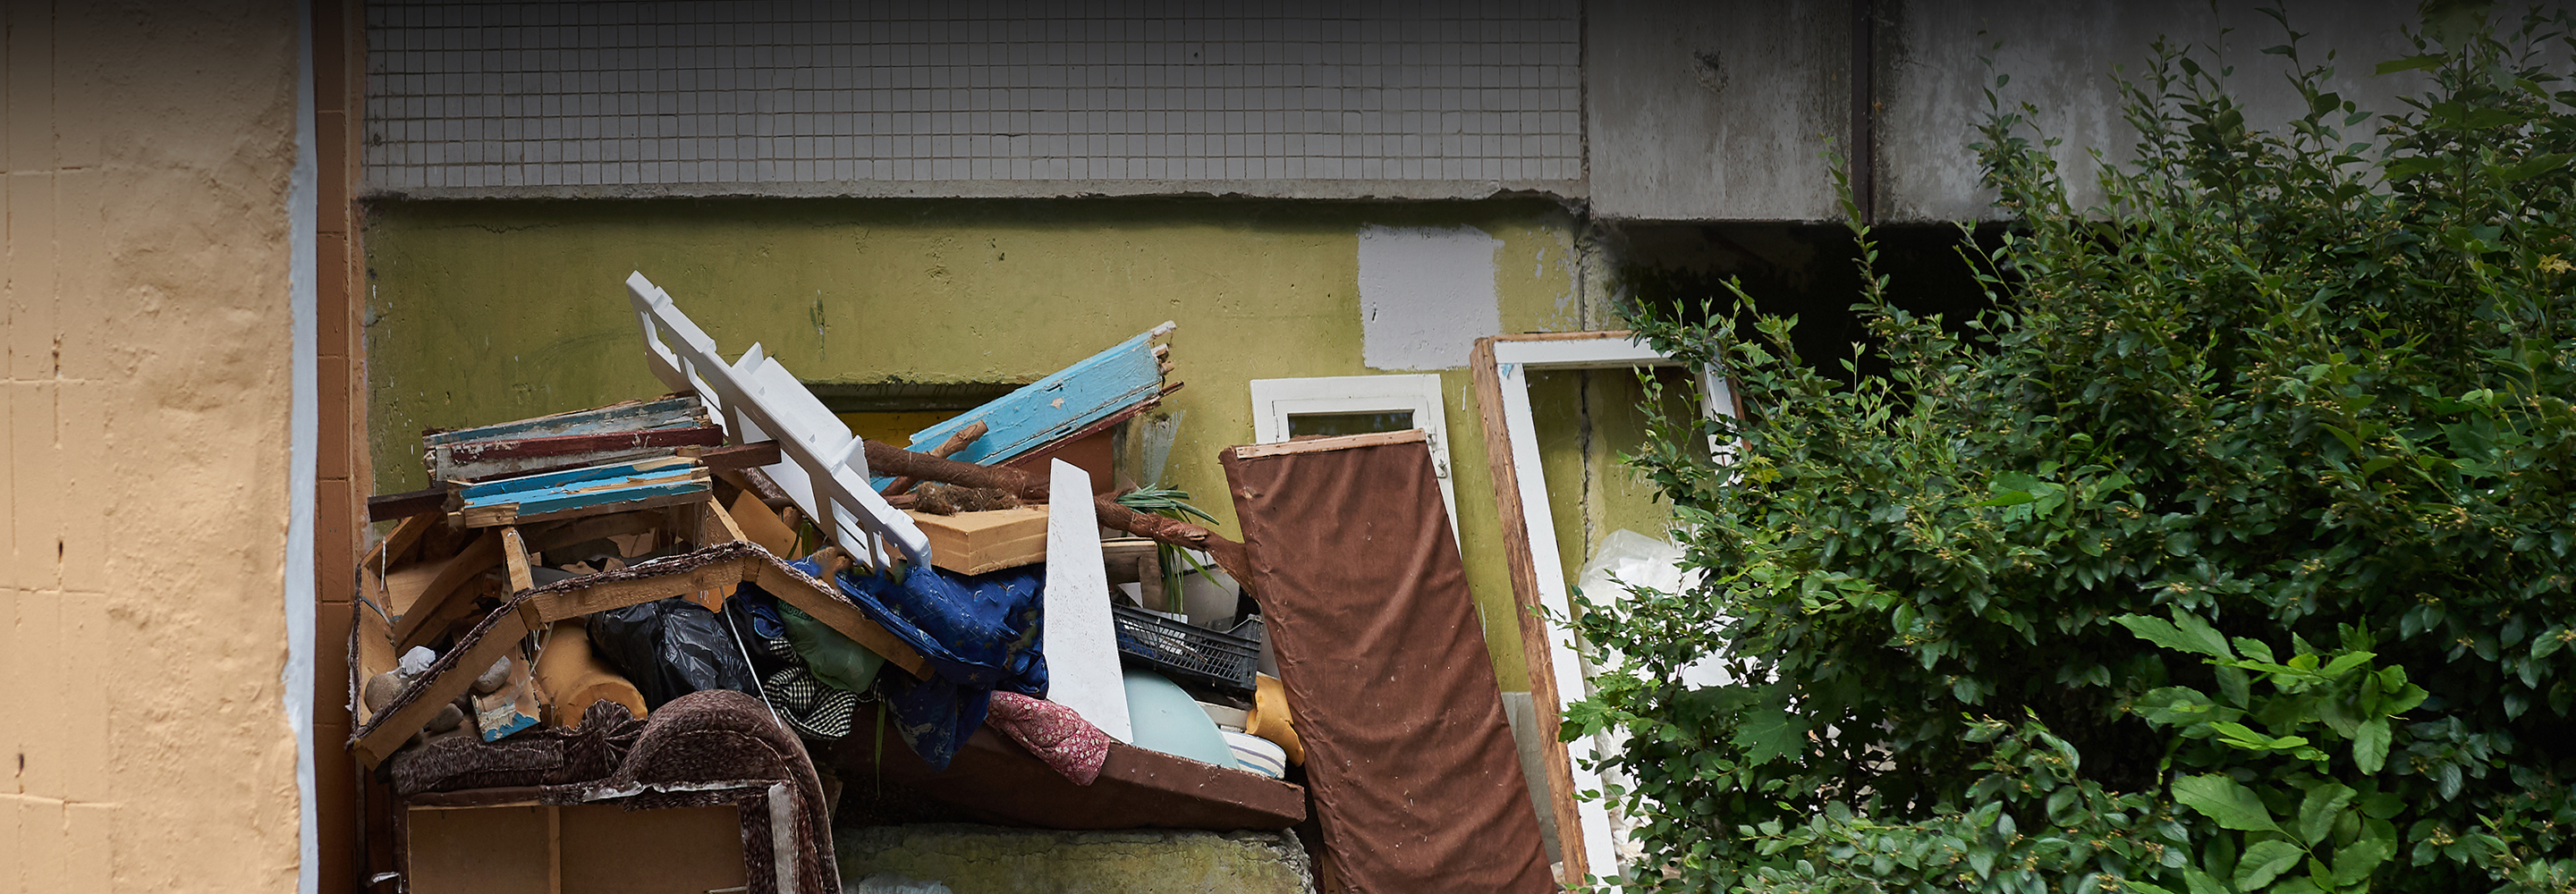 Громкий топот сверху и мусор под окнами: 6 судебных историй о соседских ссорах